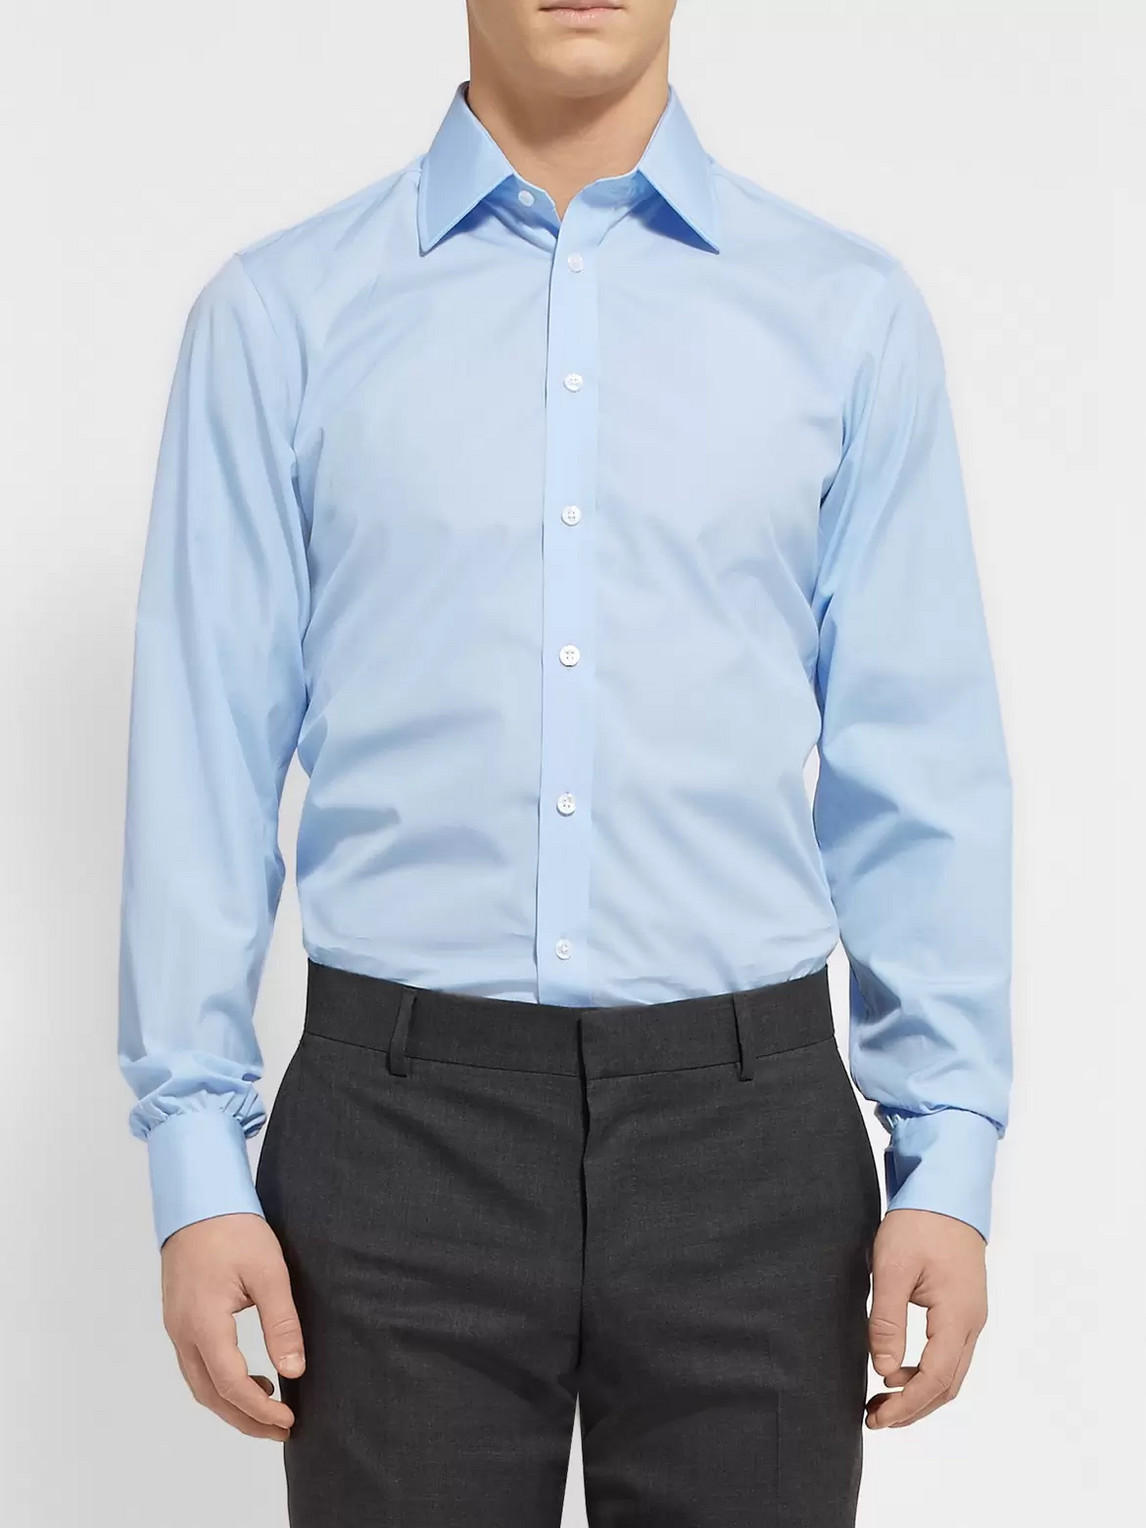 Shop Turnbull & Asser Blue Cotton Shirt